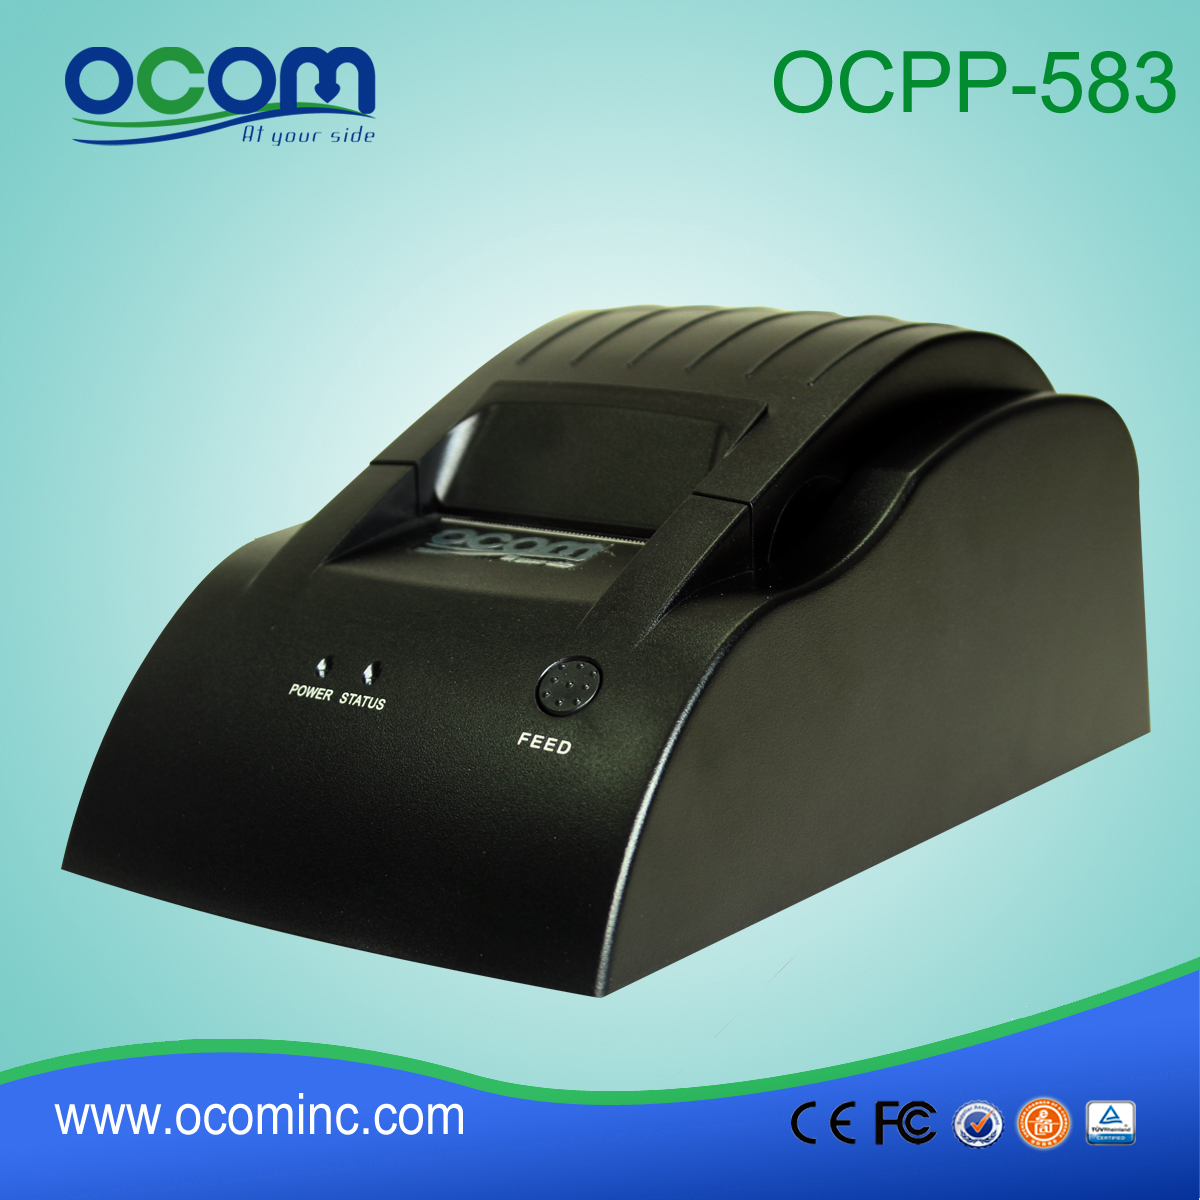 φθηνά 58 χιλιοστά θερμικό εκτυπωτή παραλαβή για POS (OCPP-583)